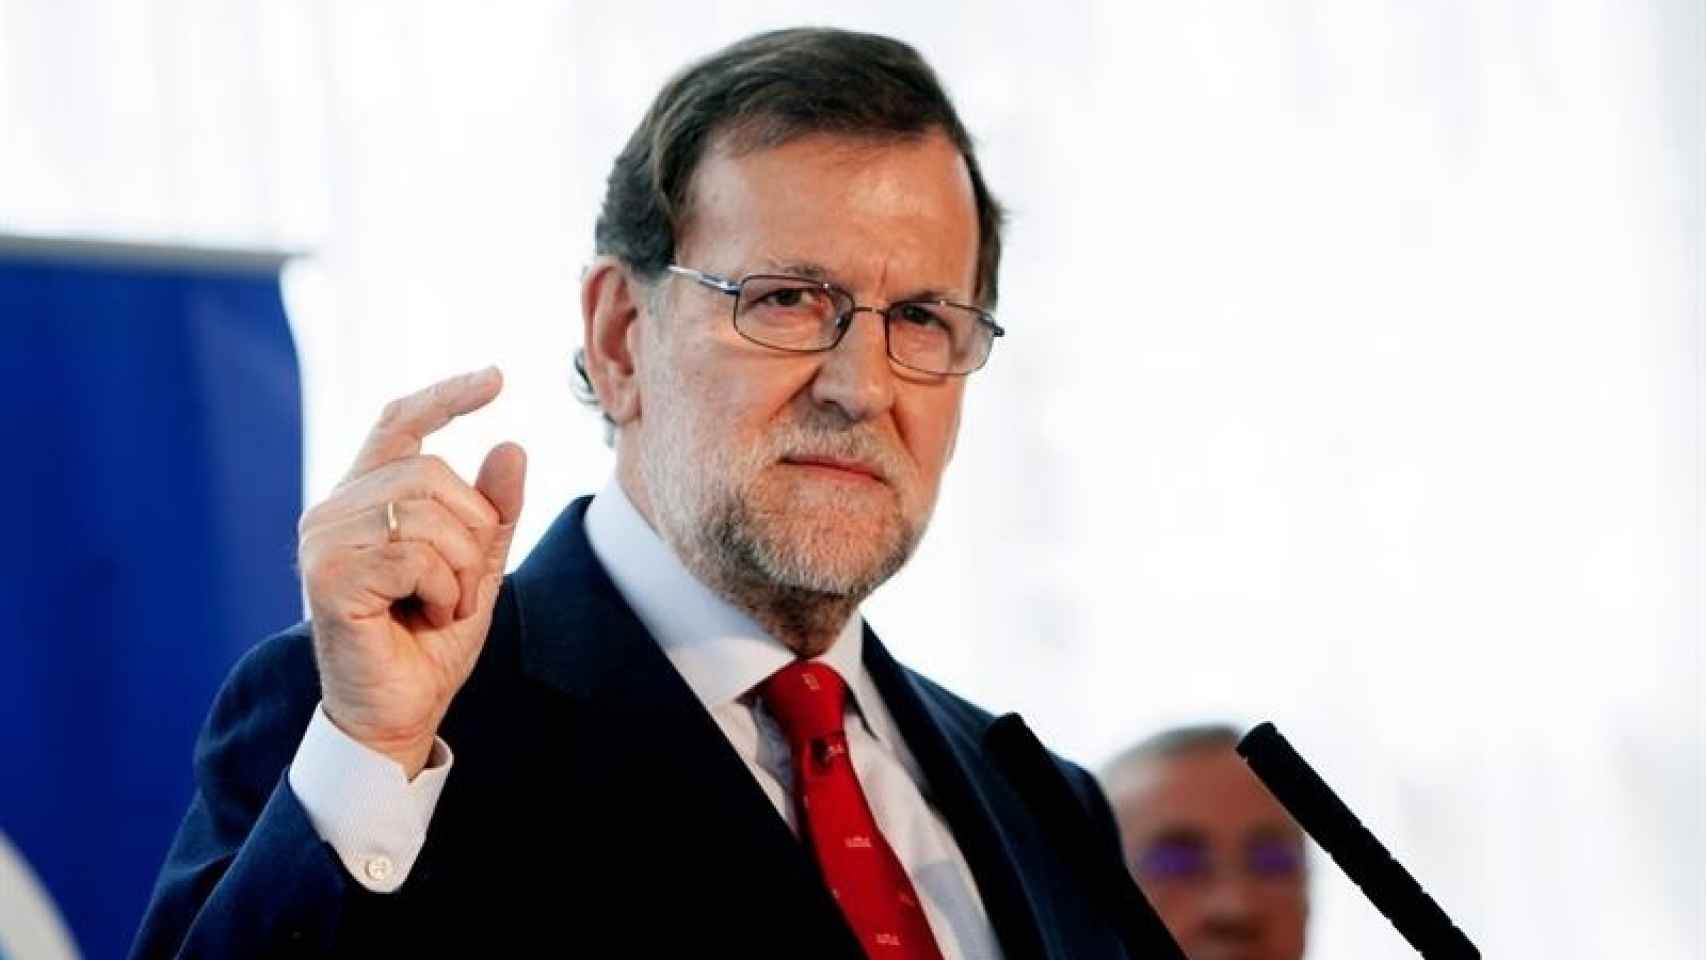 El presidente del Gobierno, Mariano Rajoy/Oto/EFE